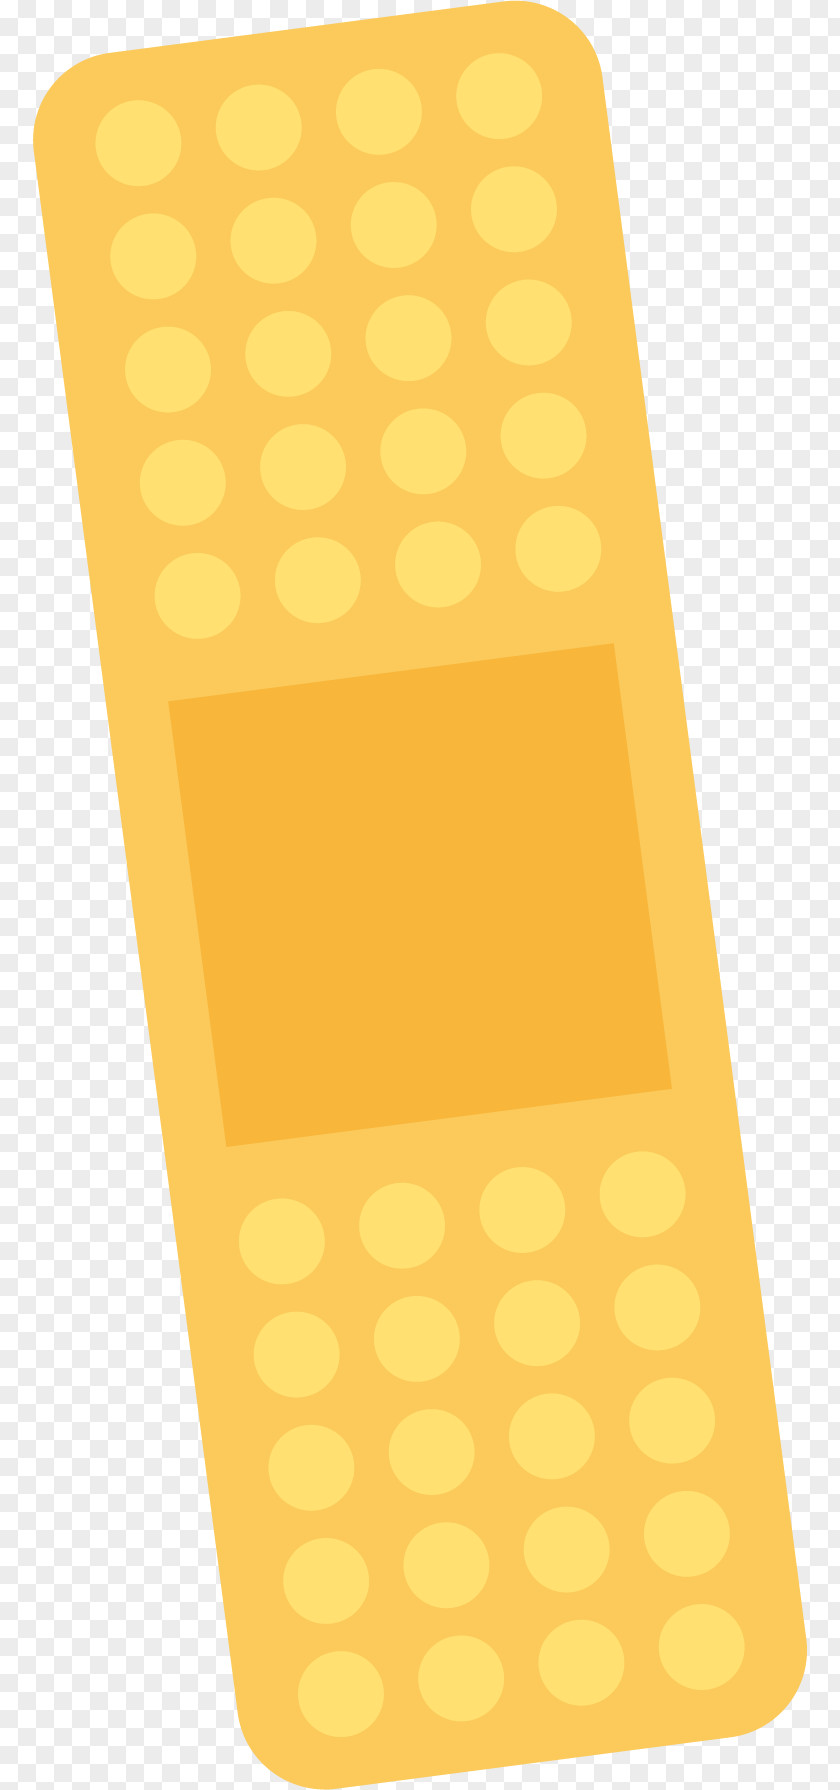 Yellow Band Aid Adhesive Bandage Computer File PNG